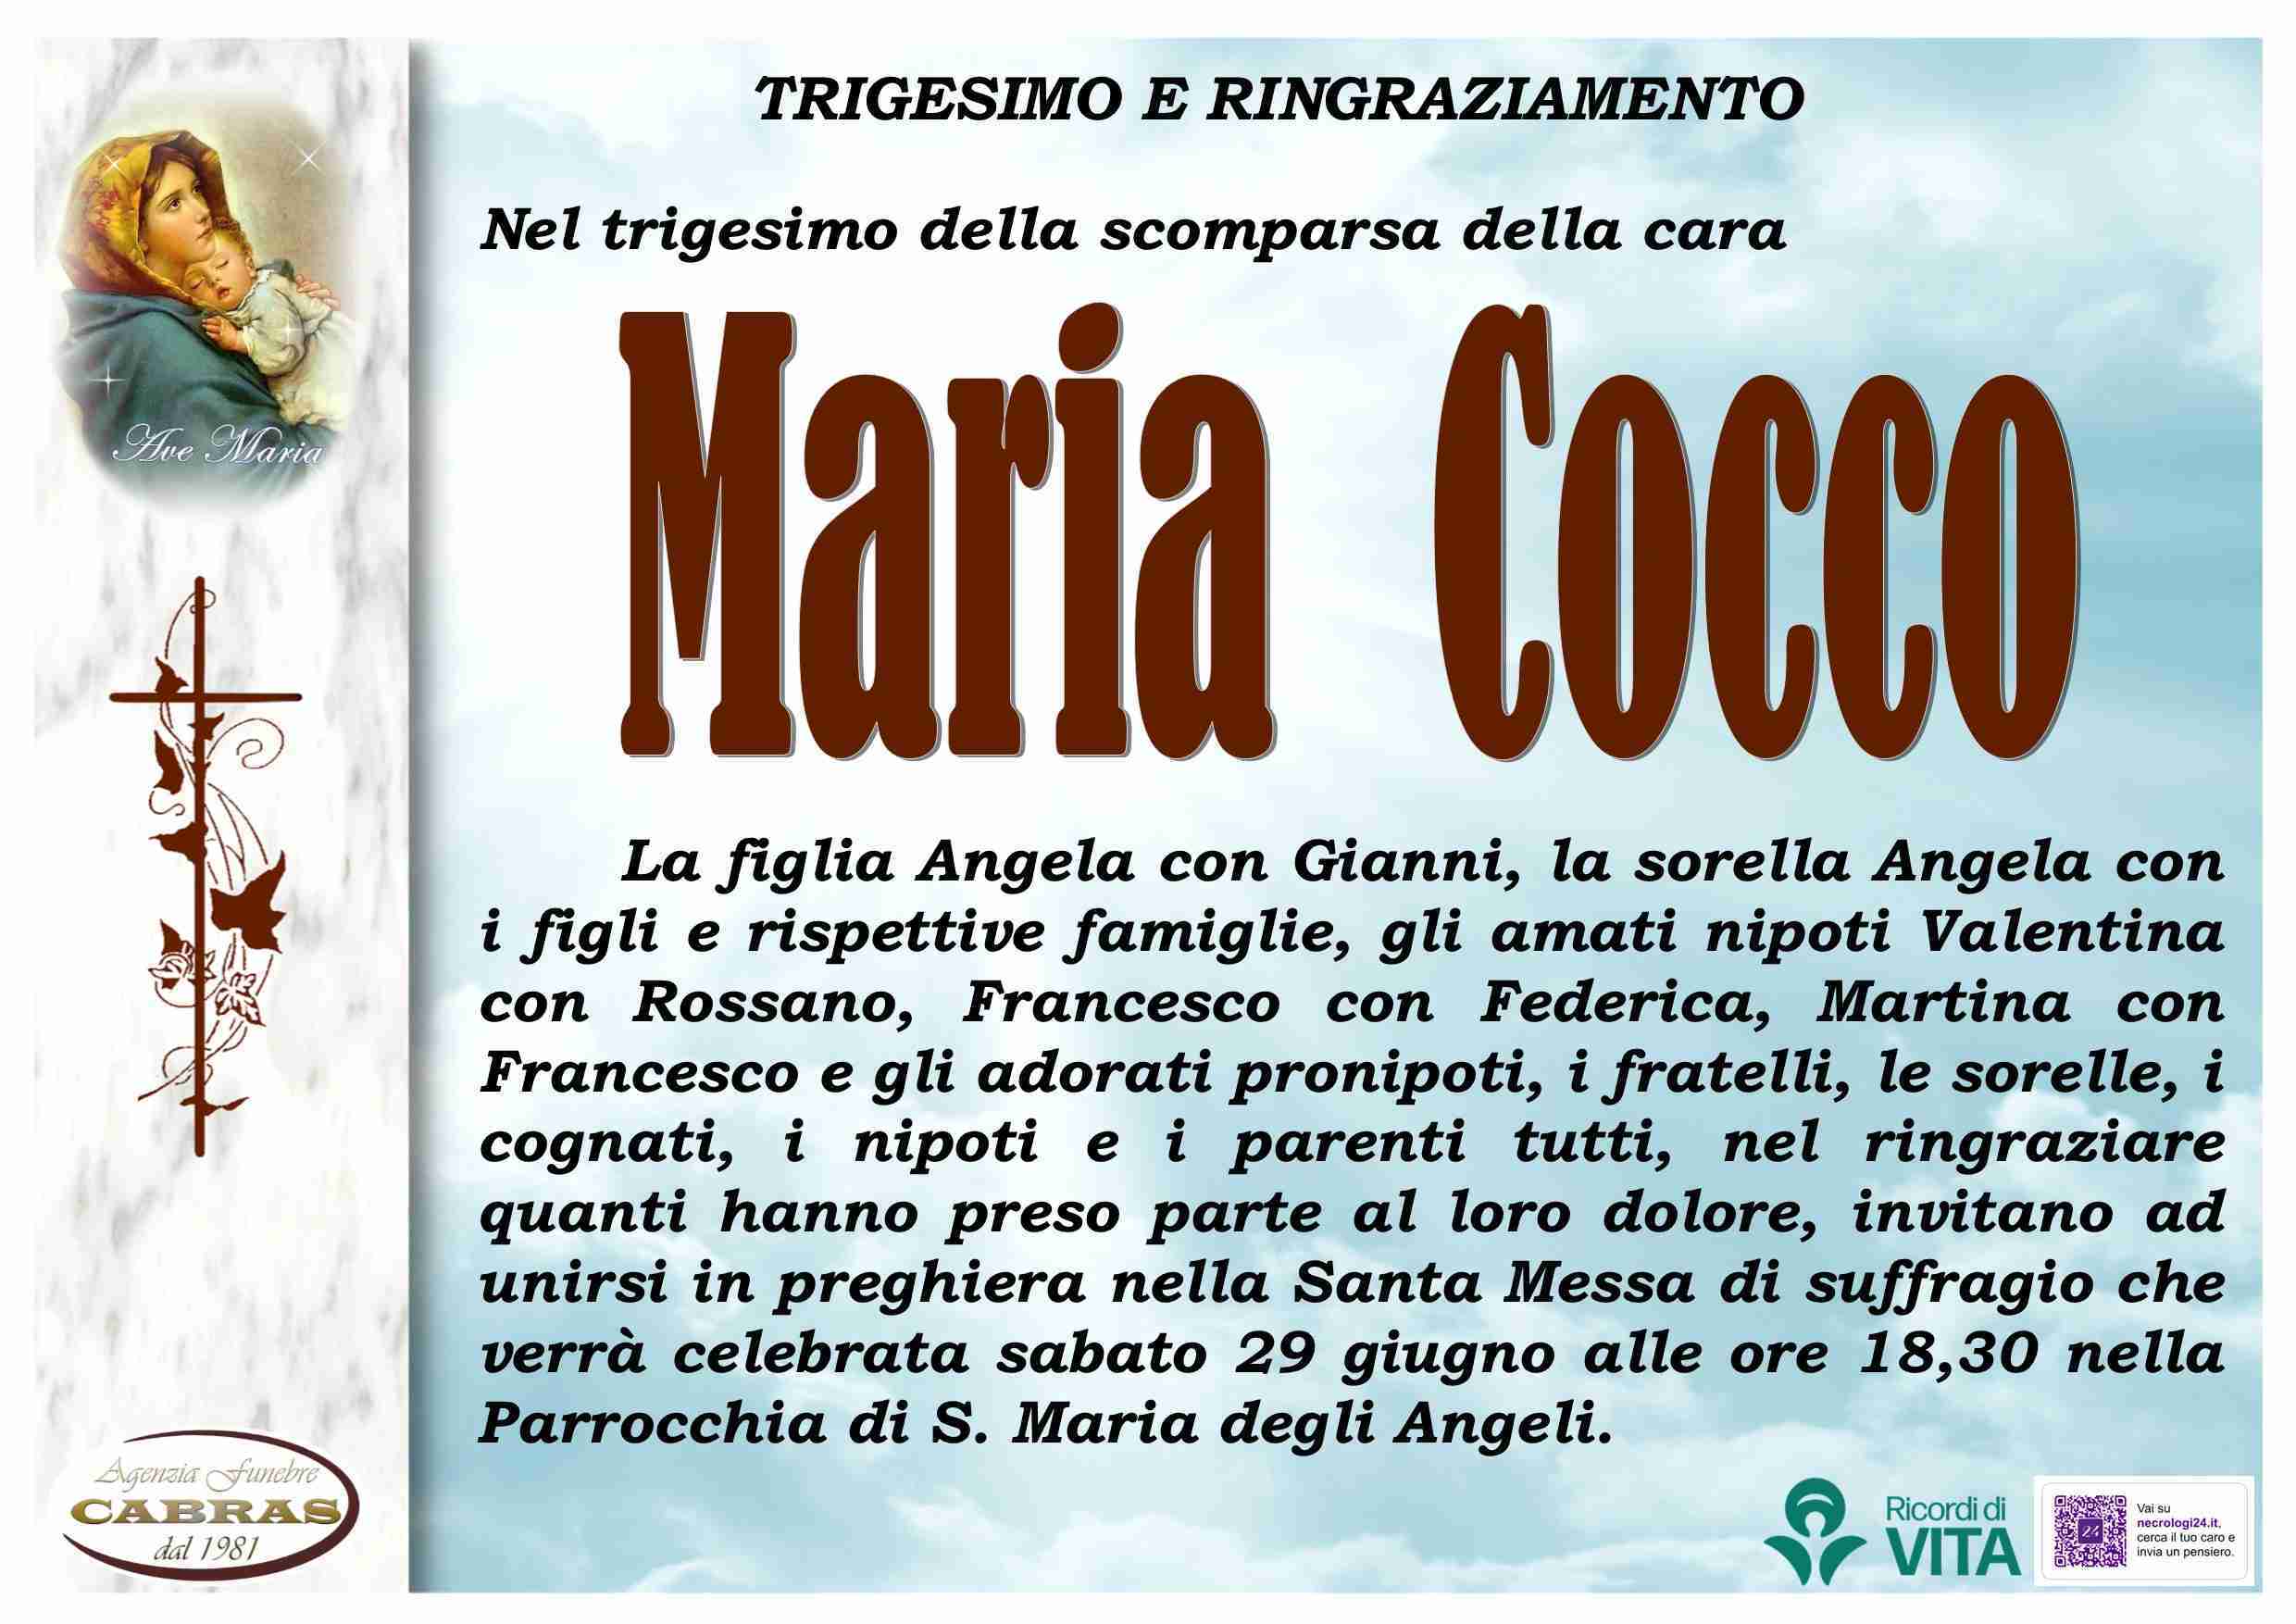 Maria Cocco